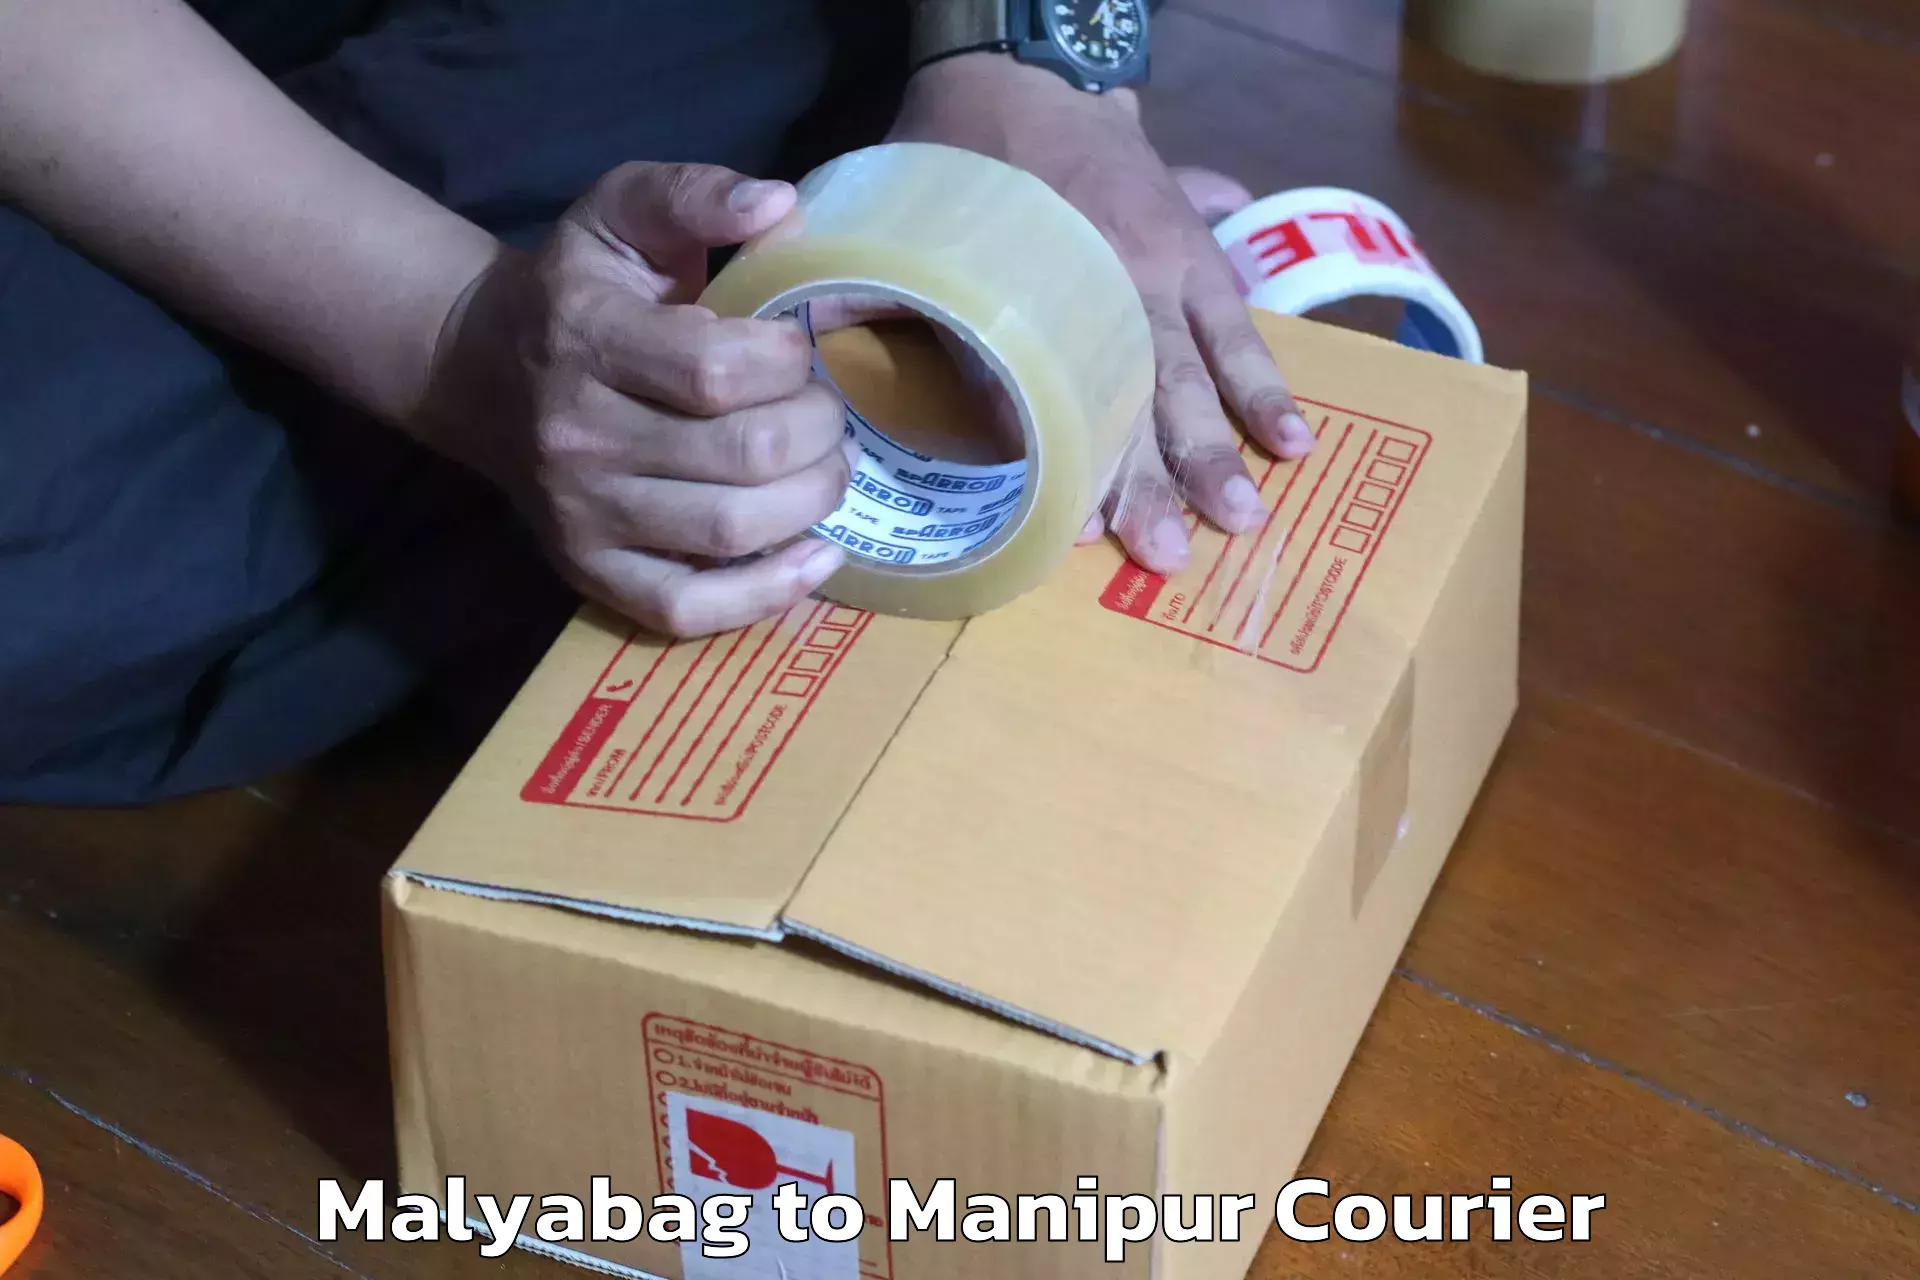 Furniture moving service Malyabag to Manipur